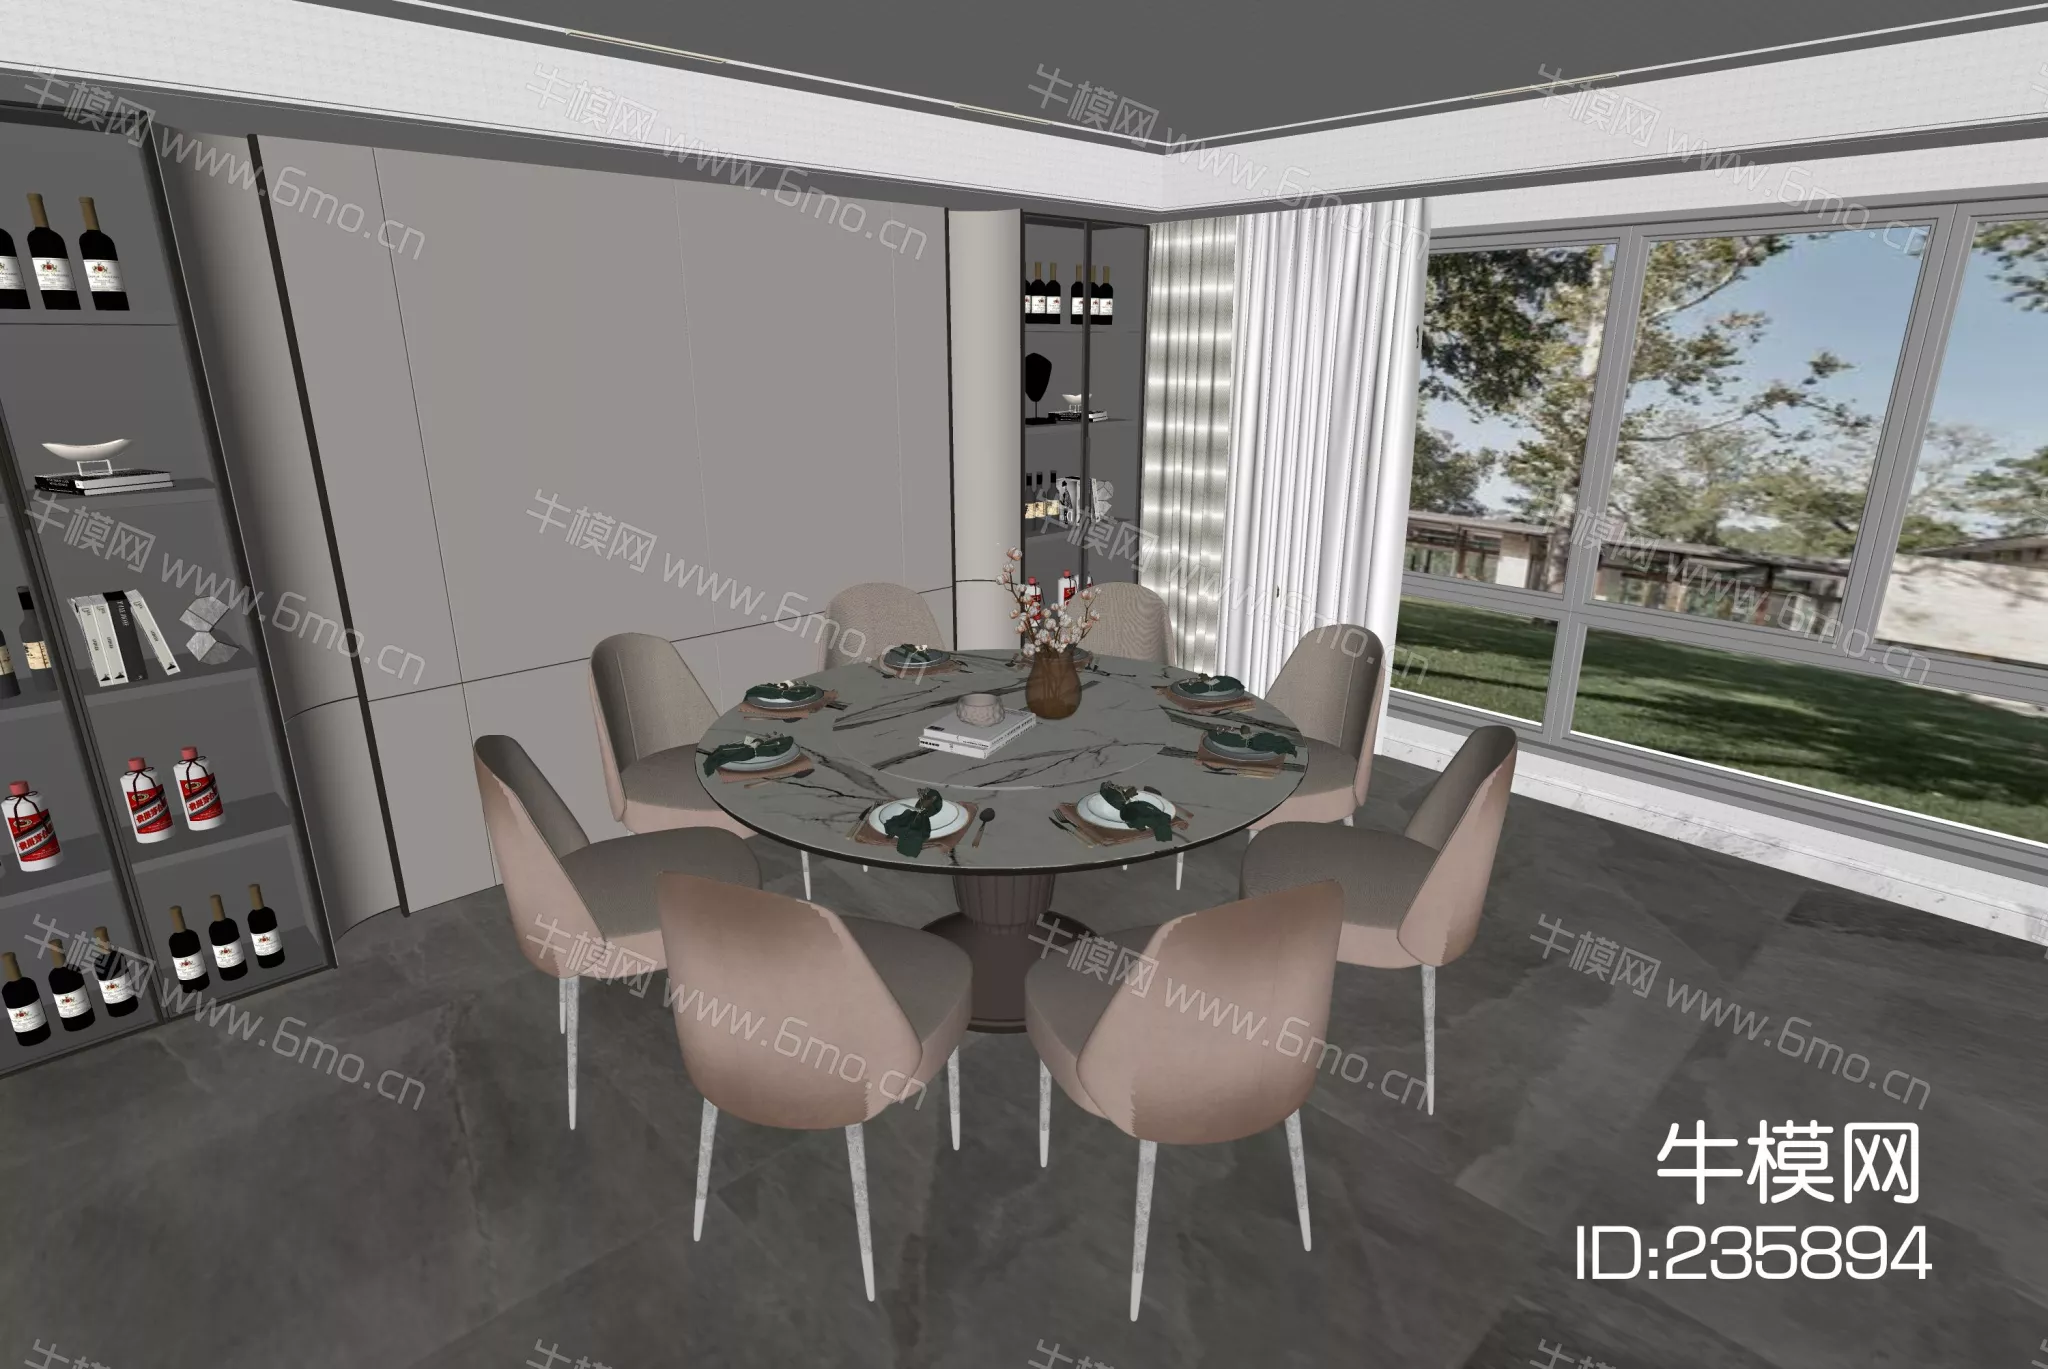 MODERN DINING TABLE SET - SKETCHUP 3D MODEL - ENSCAPE - 235894